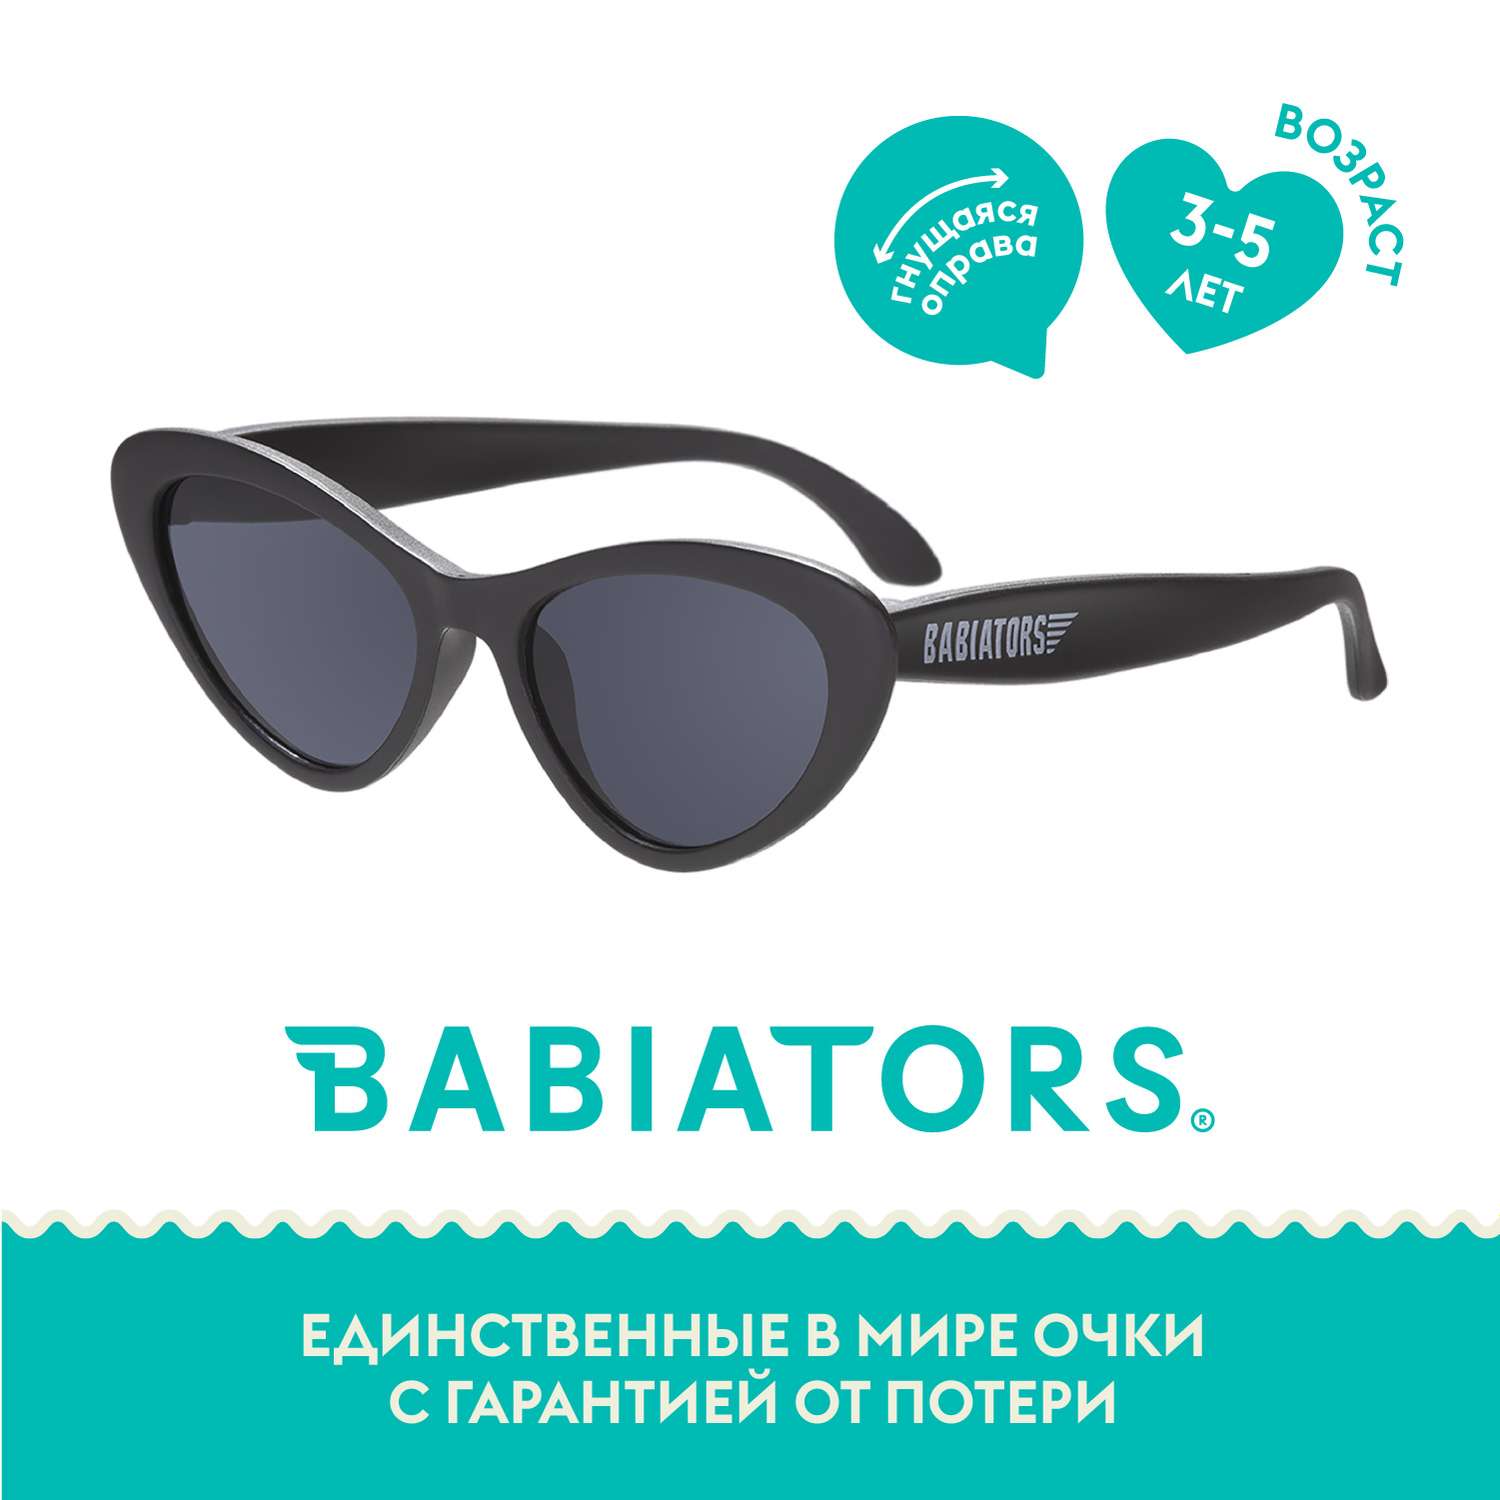 Солнцезащитные очки Babiators Original Cat-Eye Чёрный спецназ 3-5 CAT-005 - фото 1